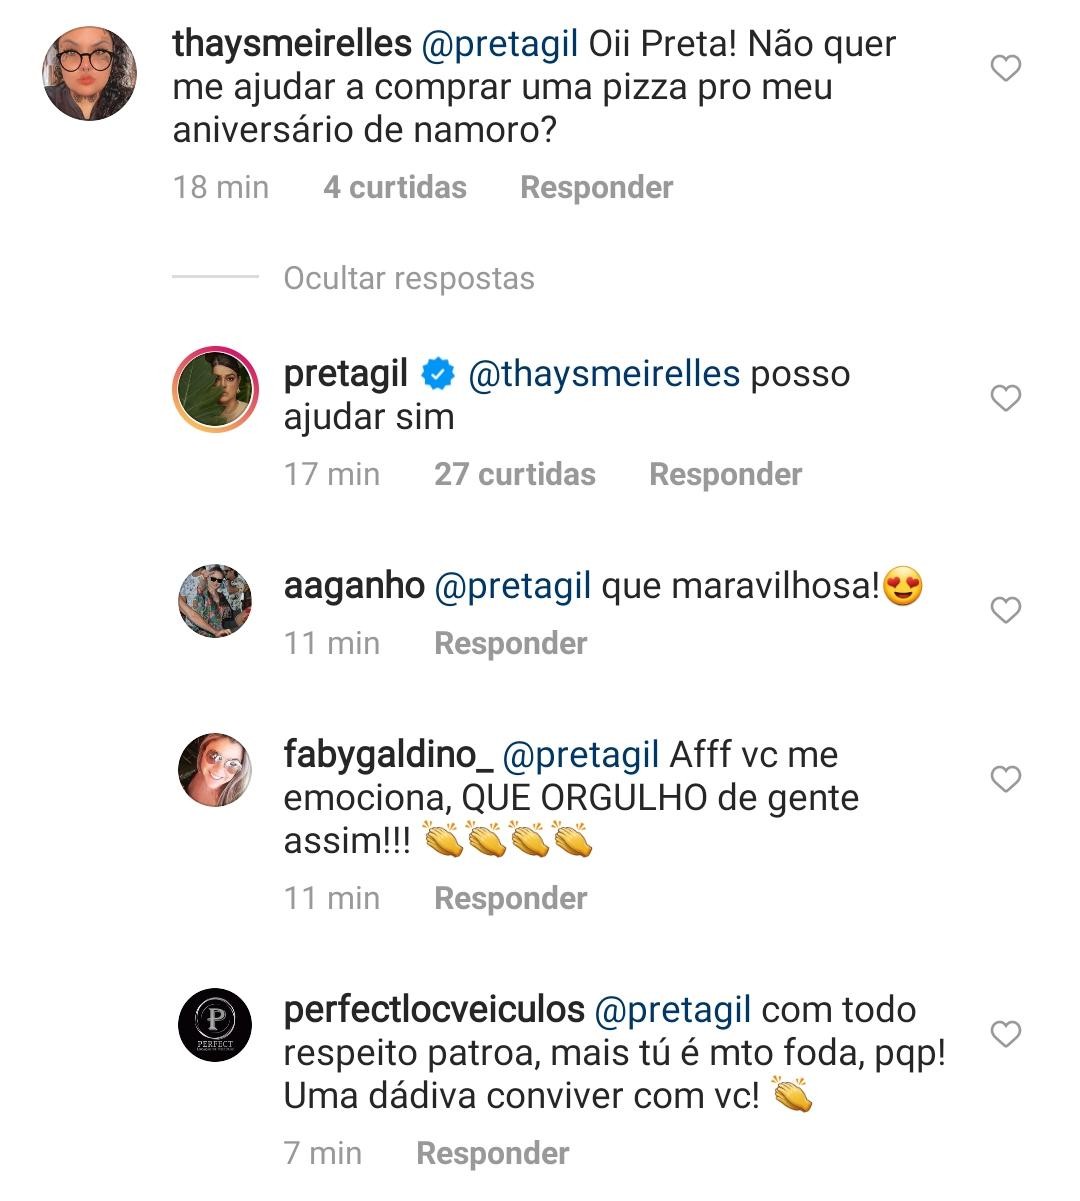 Preta também disse que ajudaria seguidor a comprar uma pizza (Foto: Reprodução/Instagram)